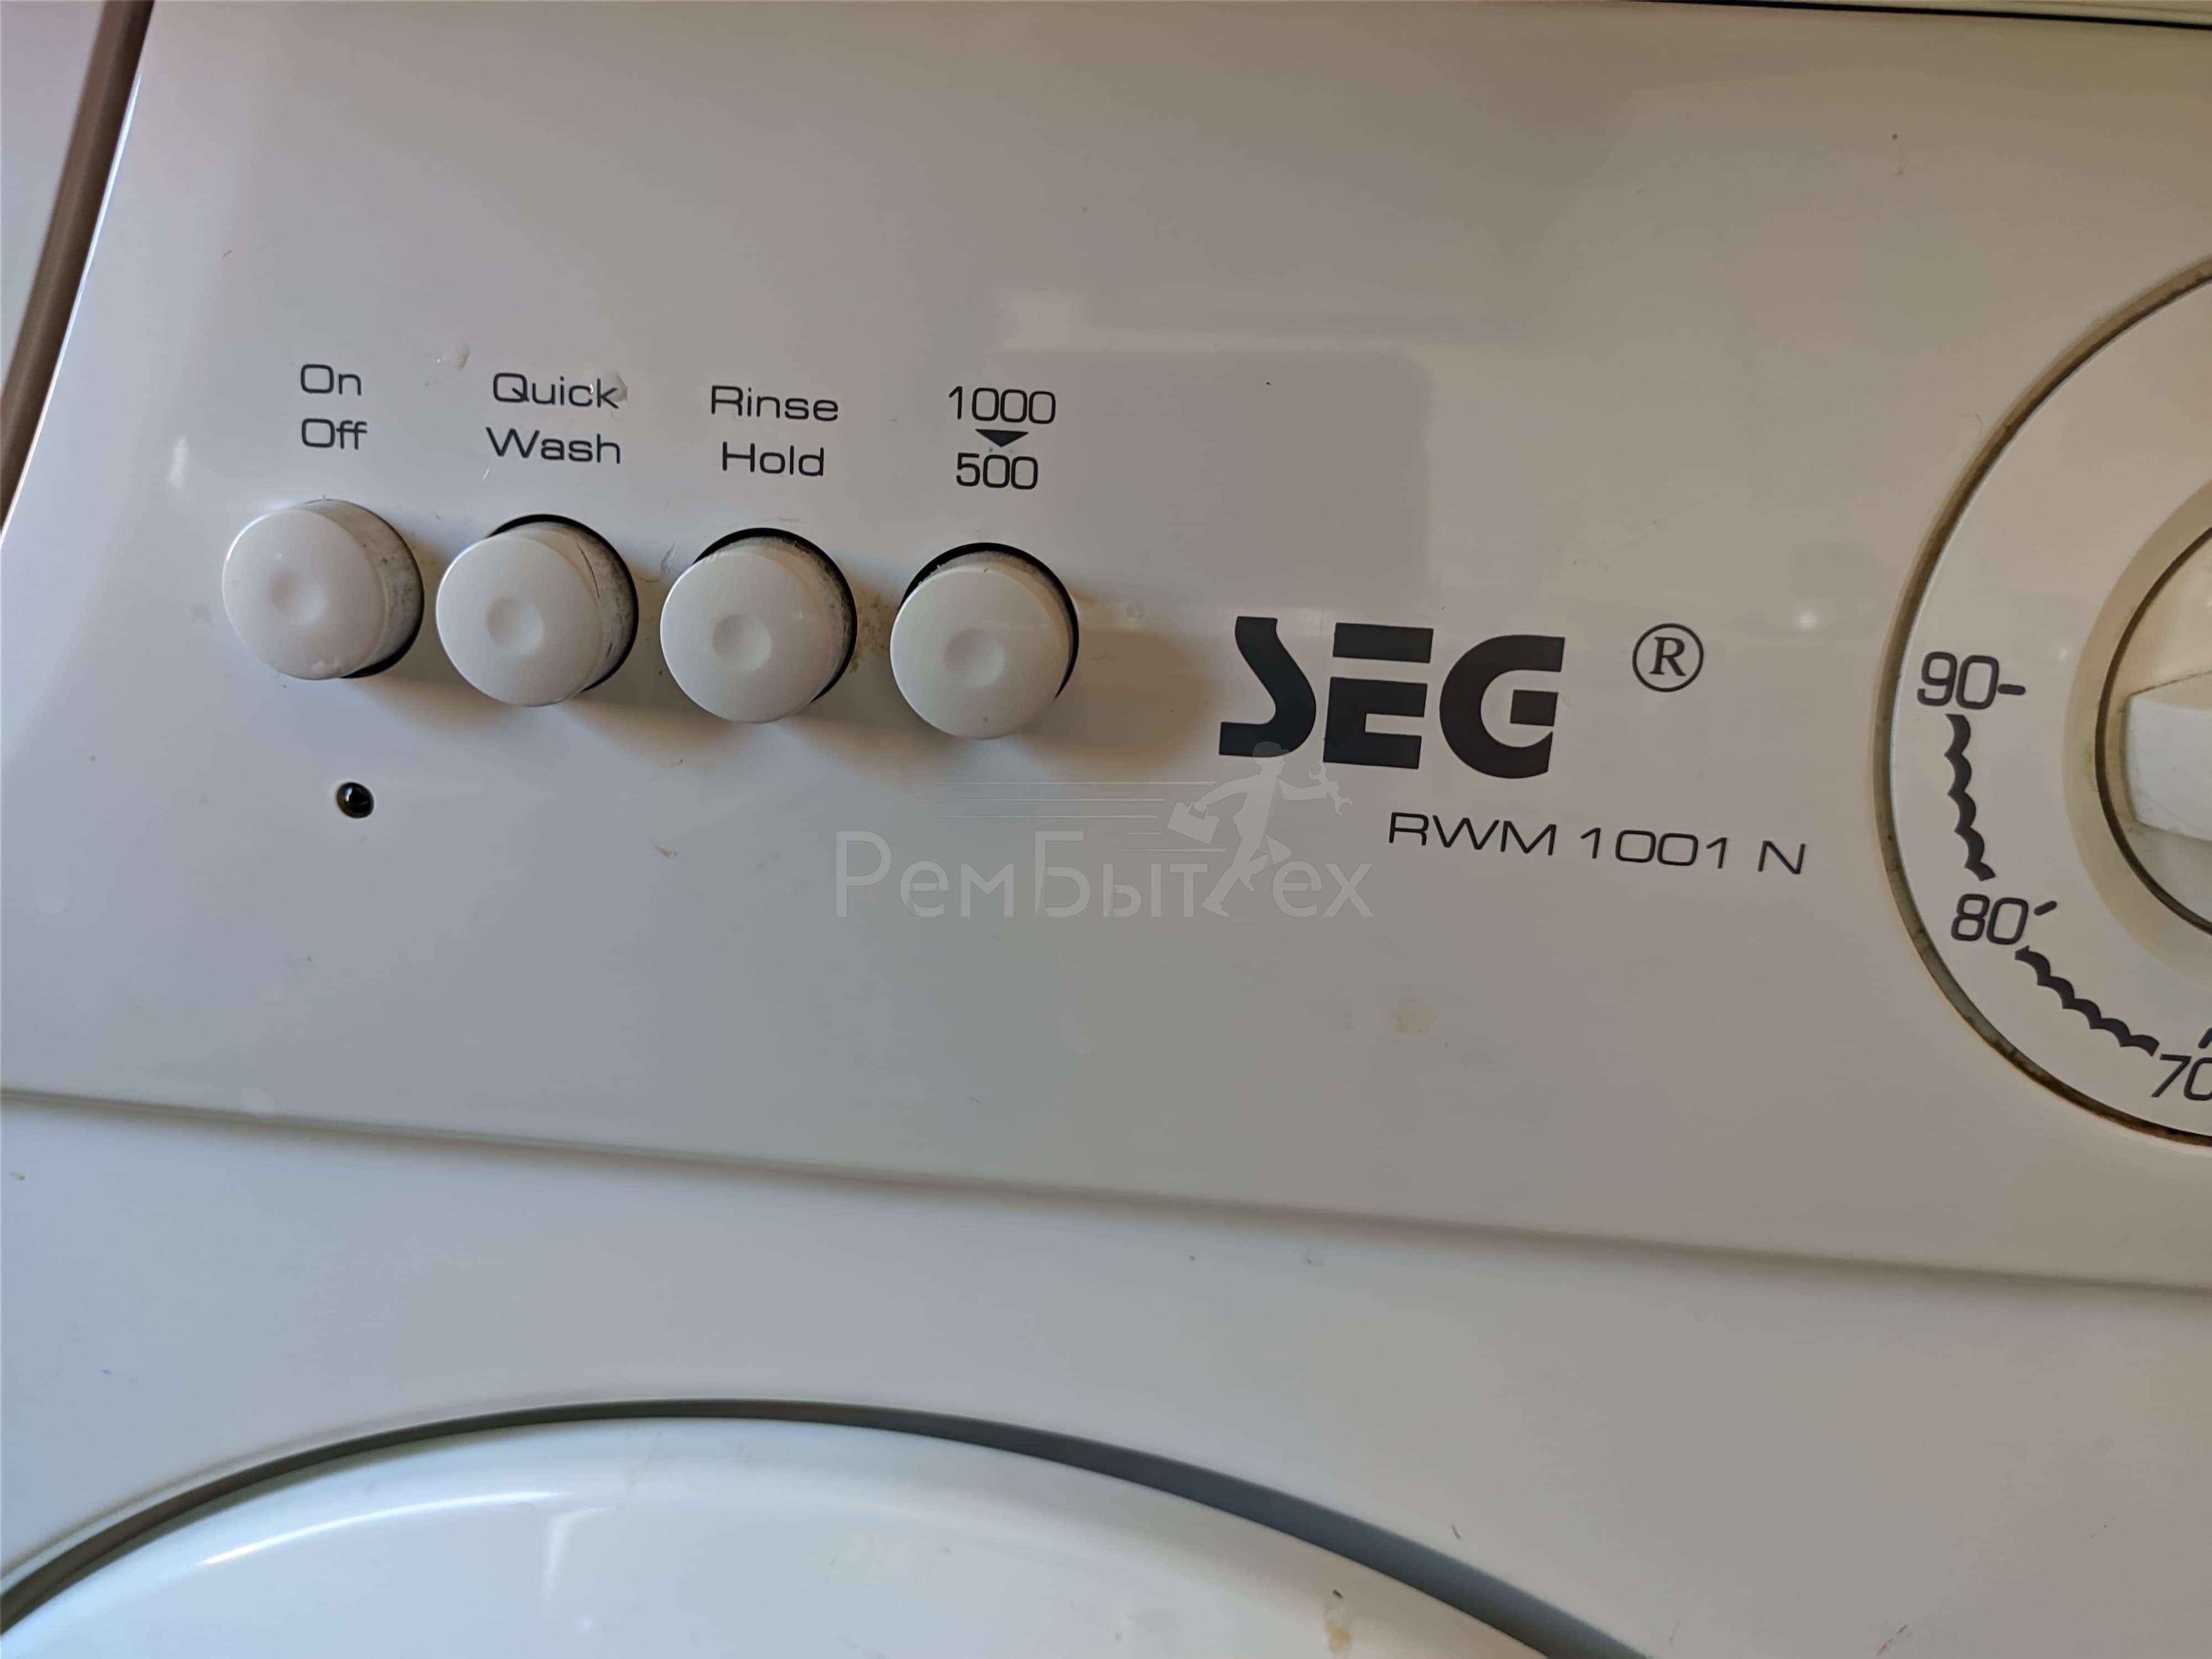 Болтается барабан стиральной машины: 4 причины почему шатается и что делать | рембыттех